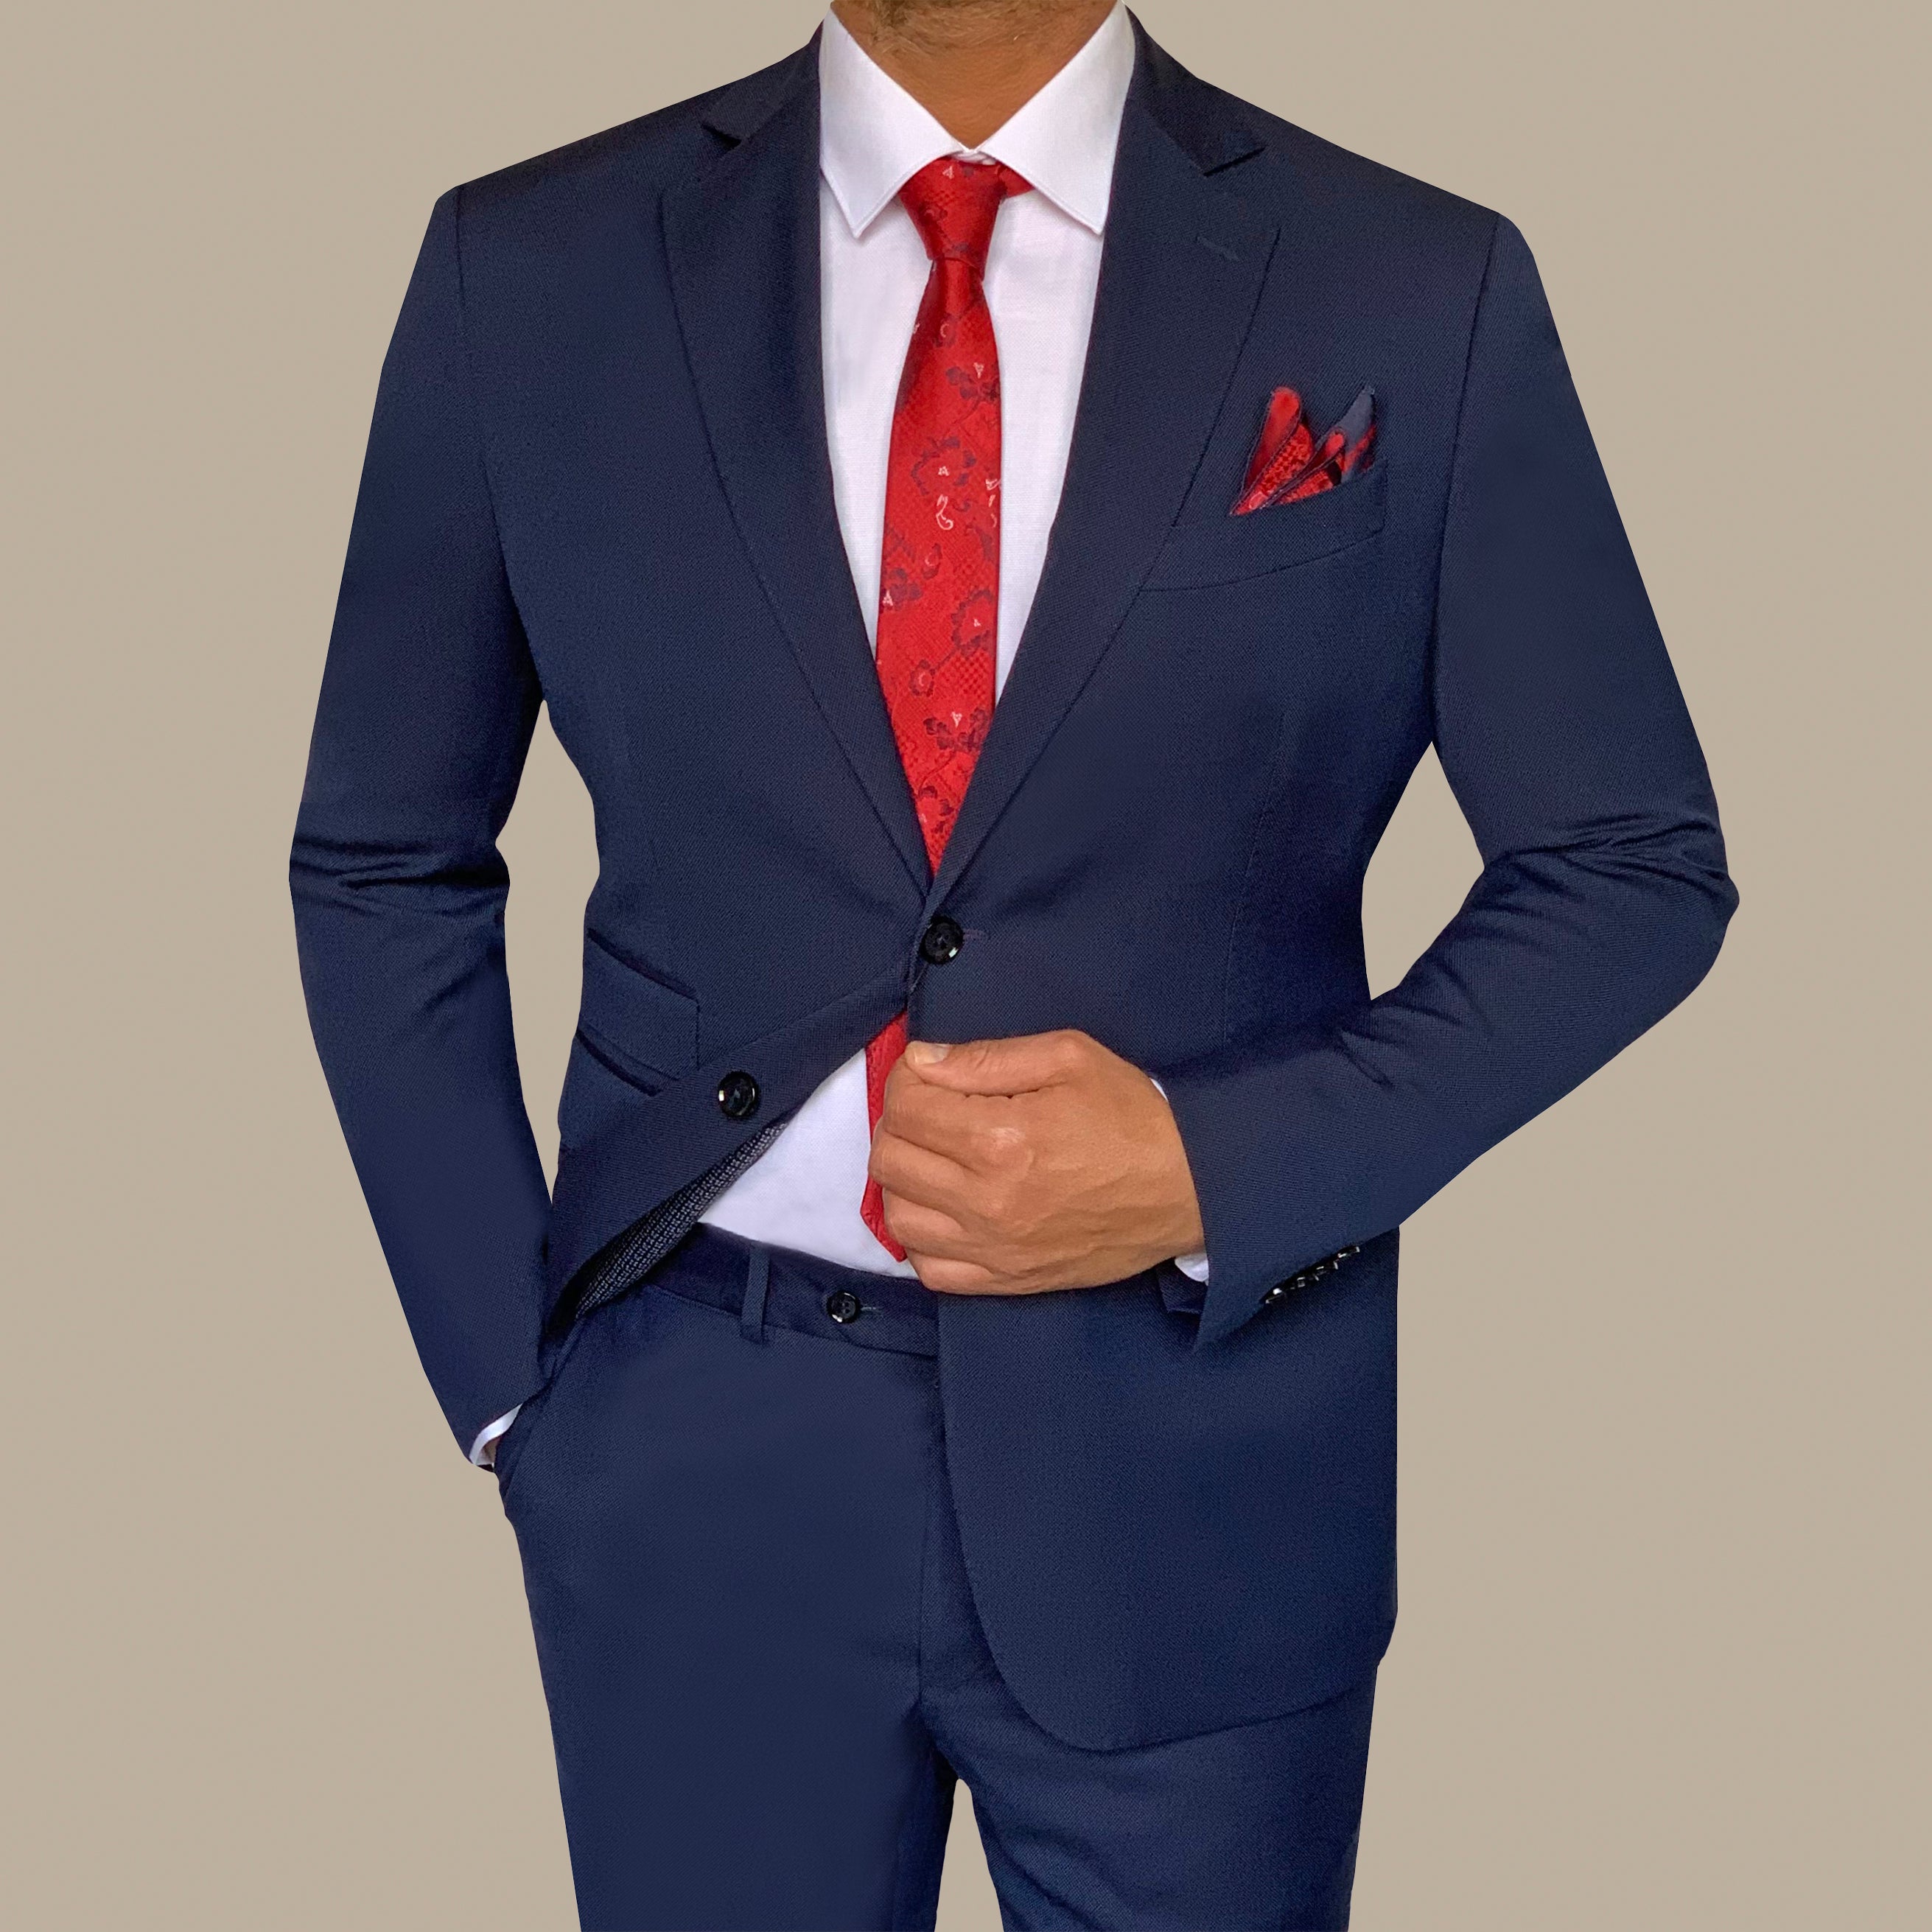 Regular Structured Suit